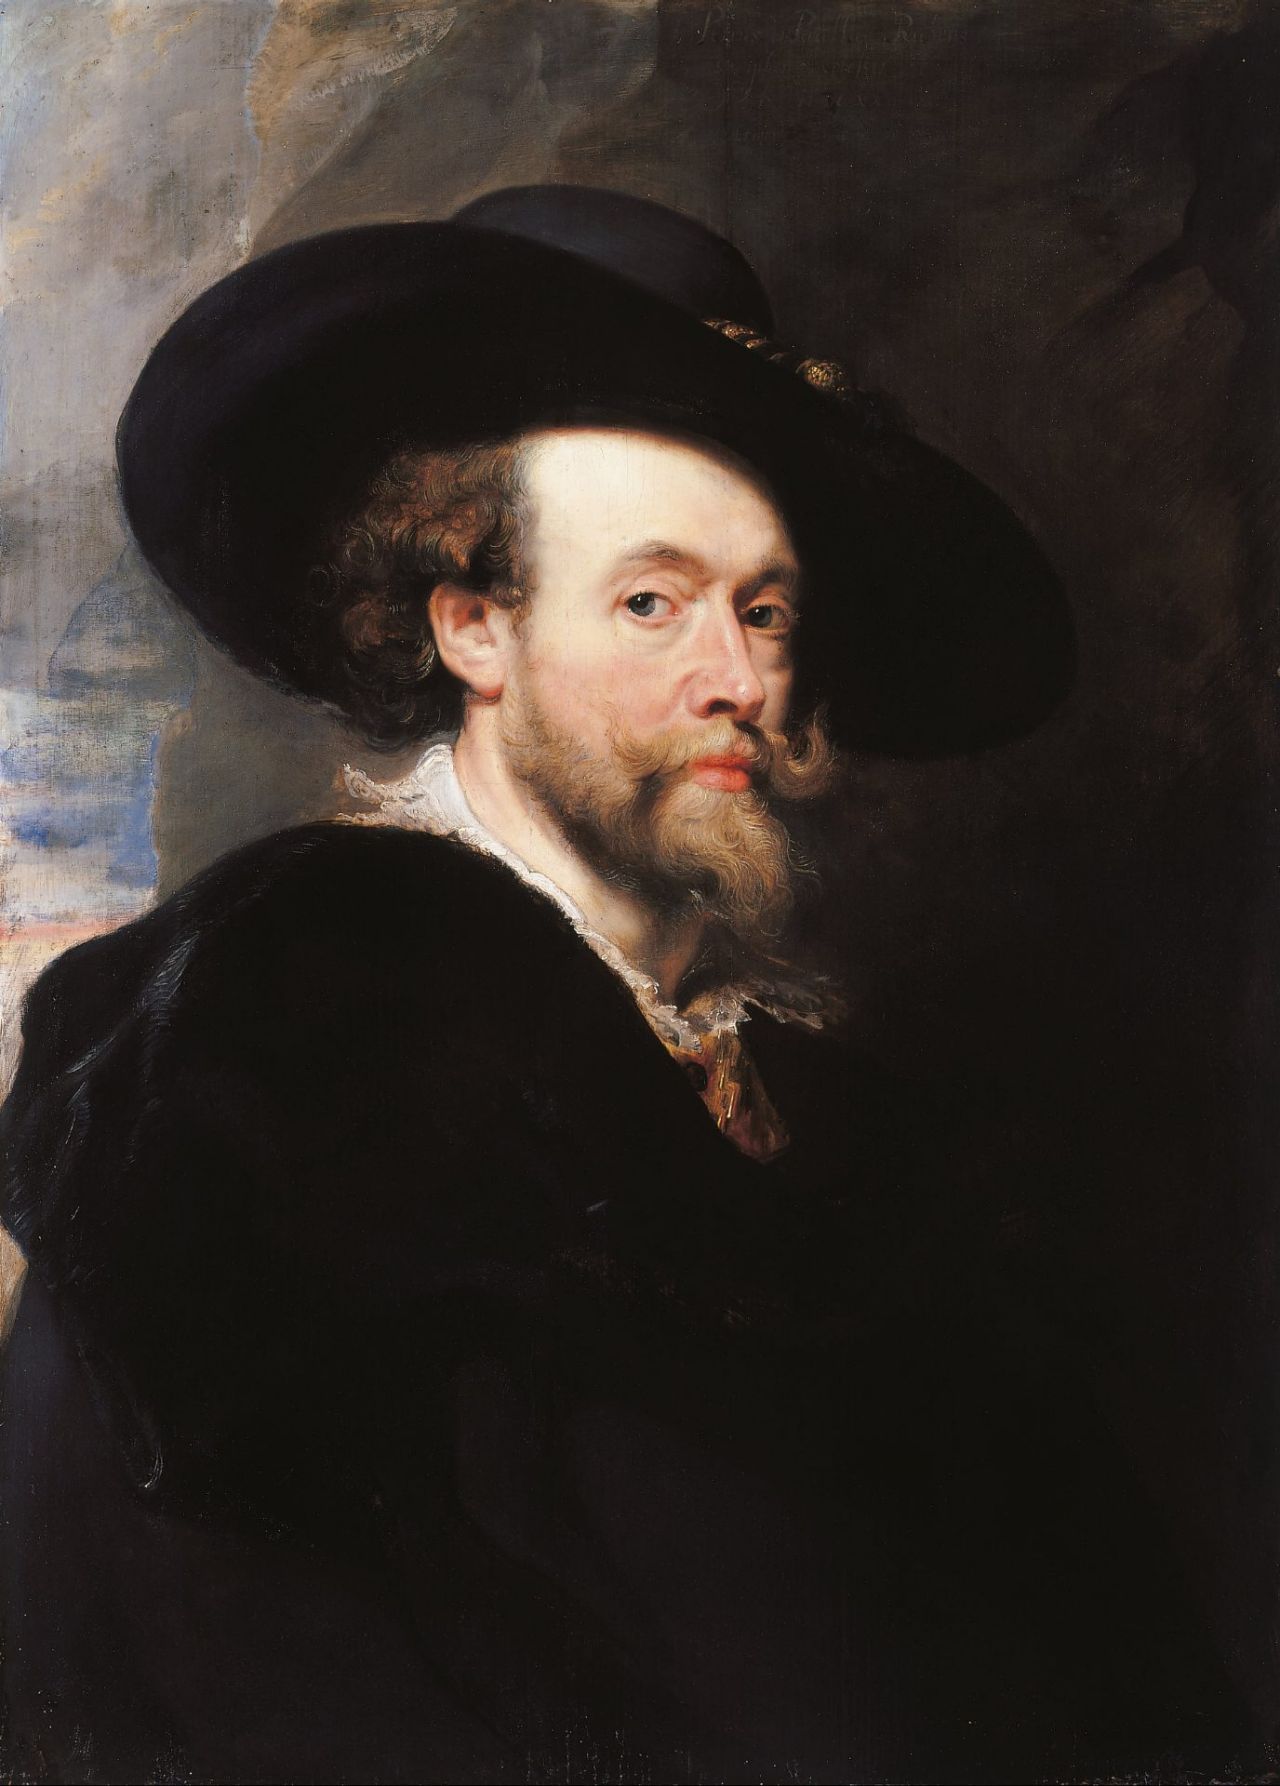 PP Rubens, schilderij 'Zelfportret van een kunstenaar'